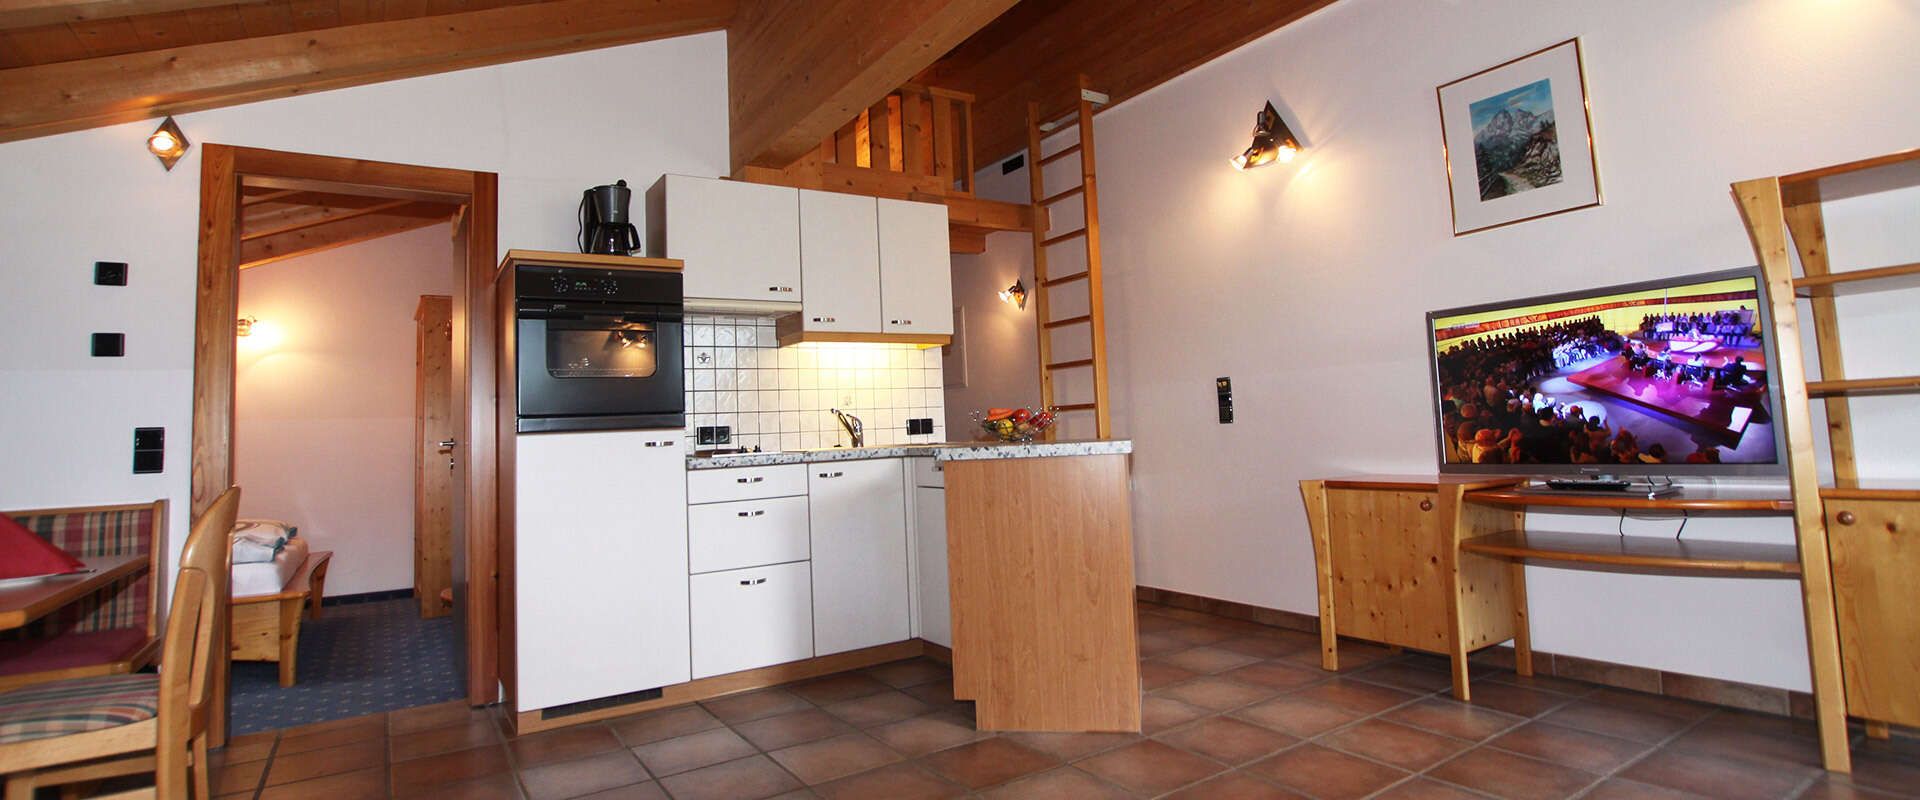 Appartement mit Küche im Wipptal Tirol